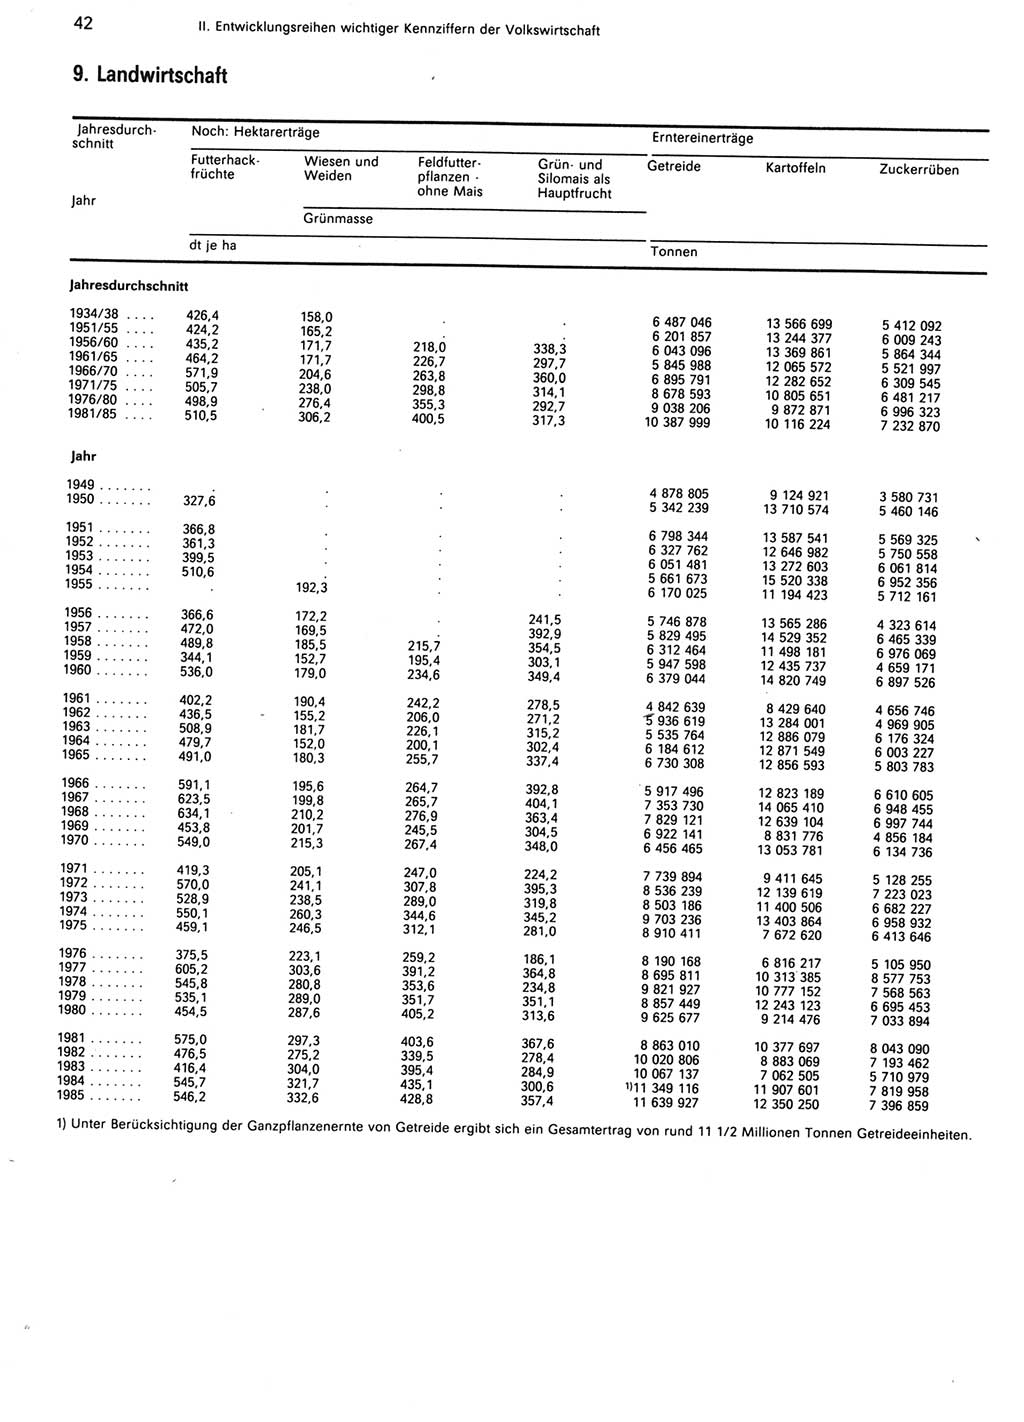 Statistisches Jahrbuch der Deutschen Demokratischen Republik (DDR) 1986, Seite 42 (Stat. Jb. DDR 1986, S. 42)